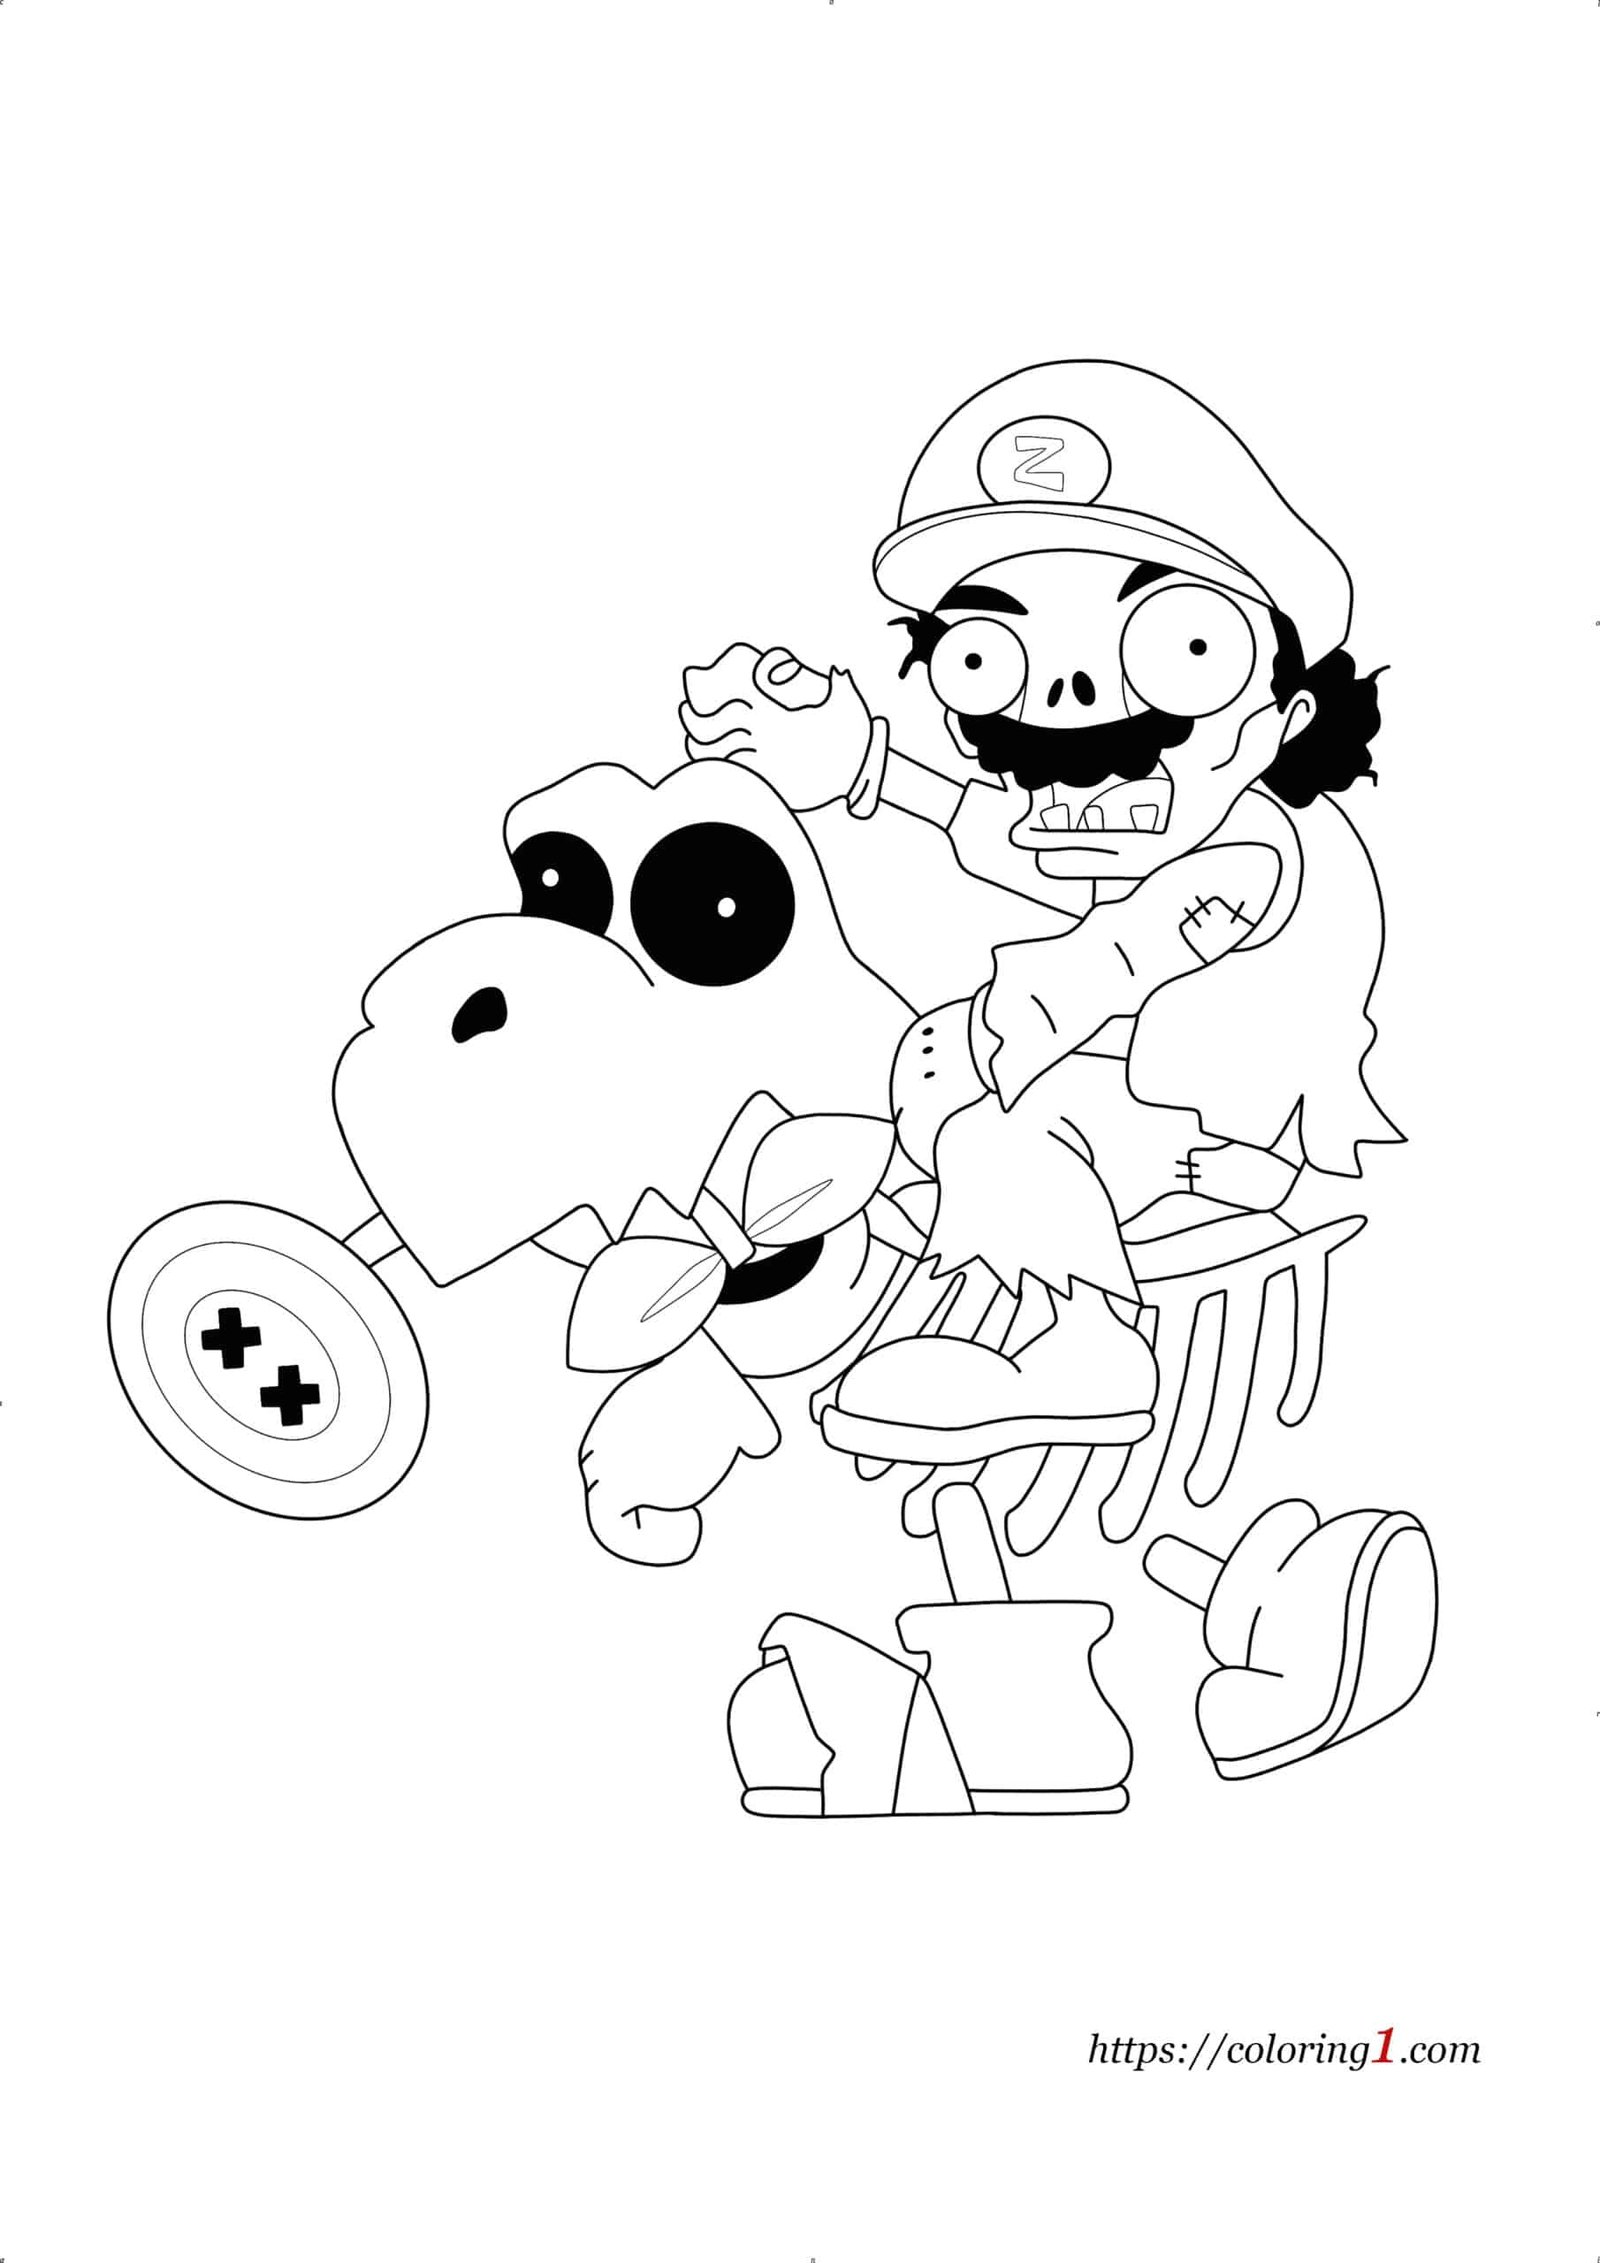 Mario Zombie kleurplaat